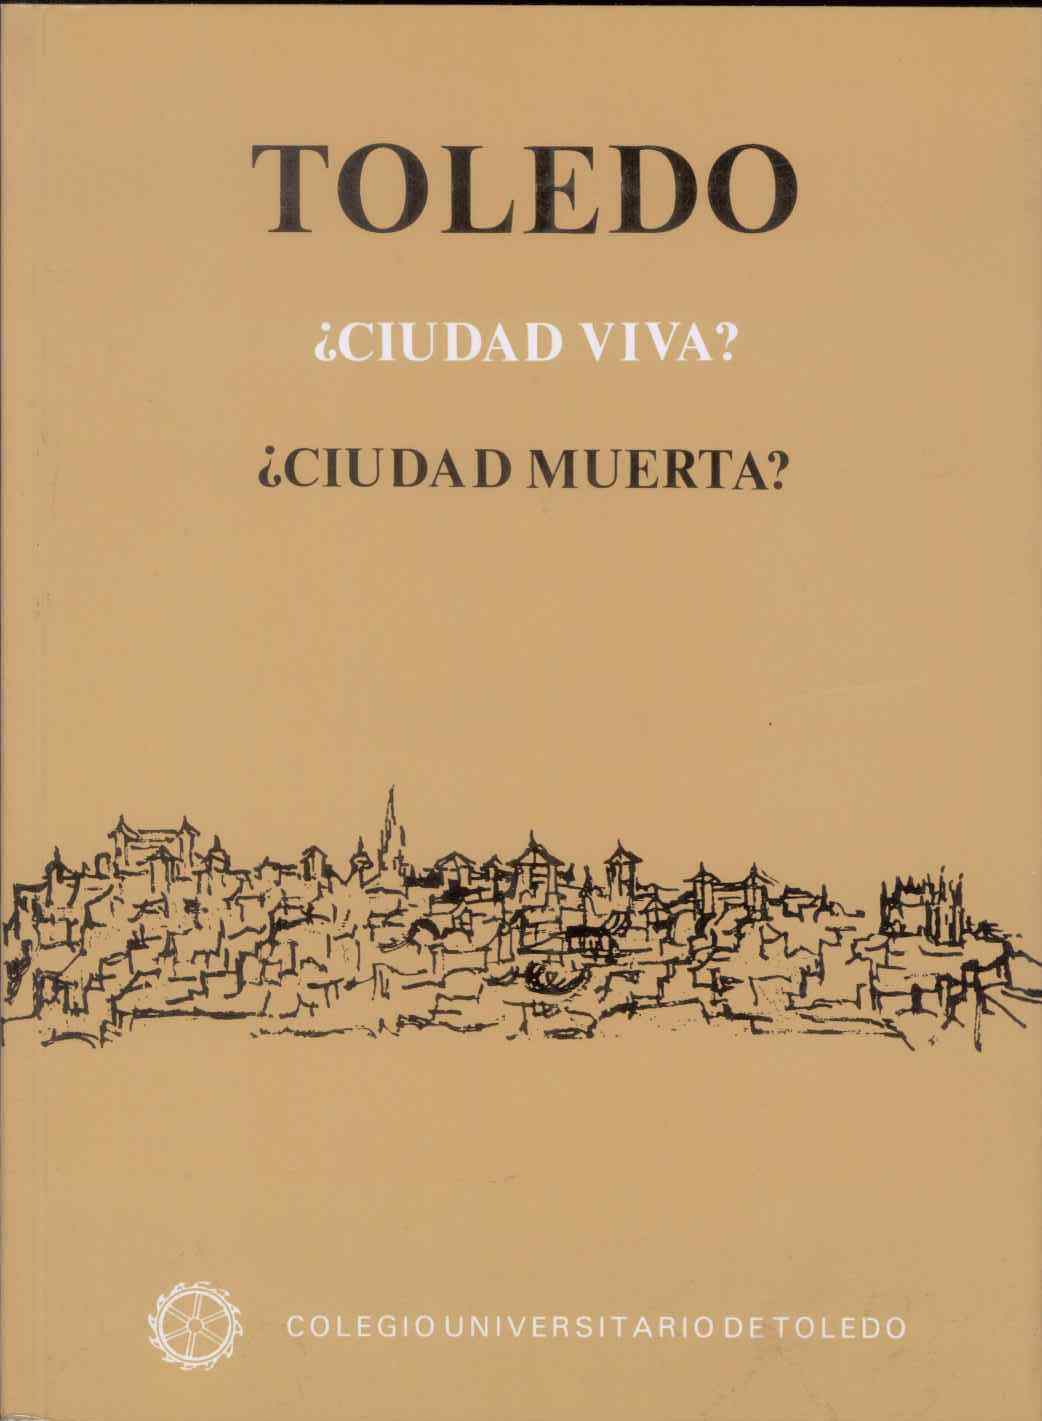 Toledo ¿ciudad viva? ¿ciudad muerta?